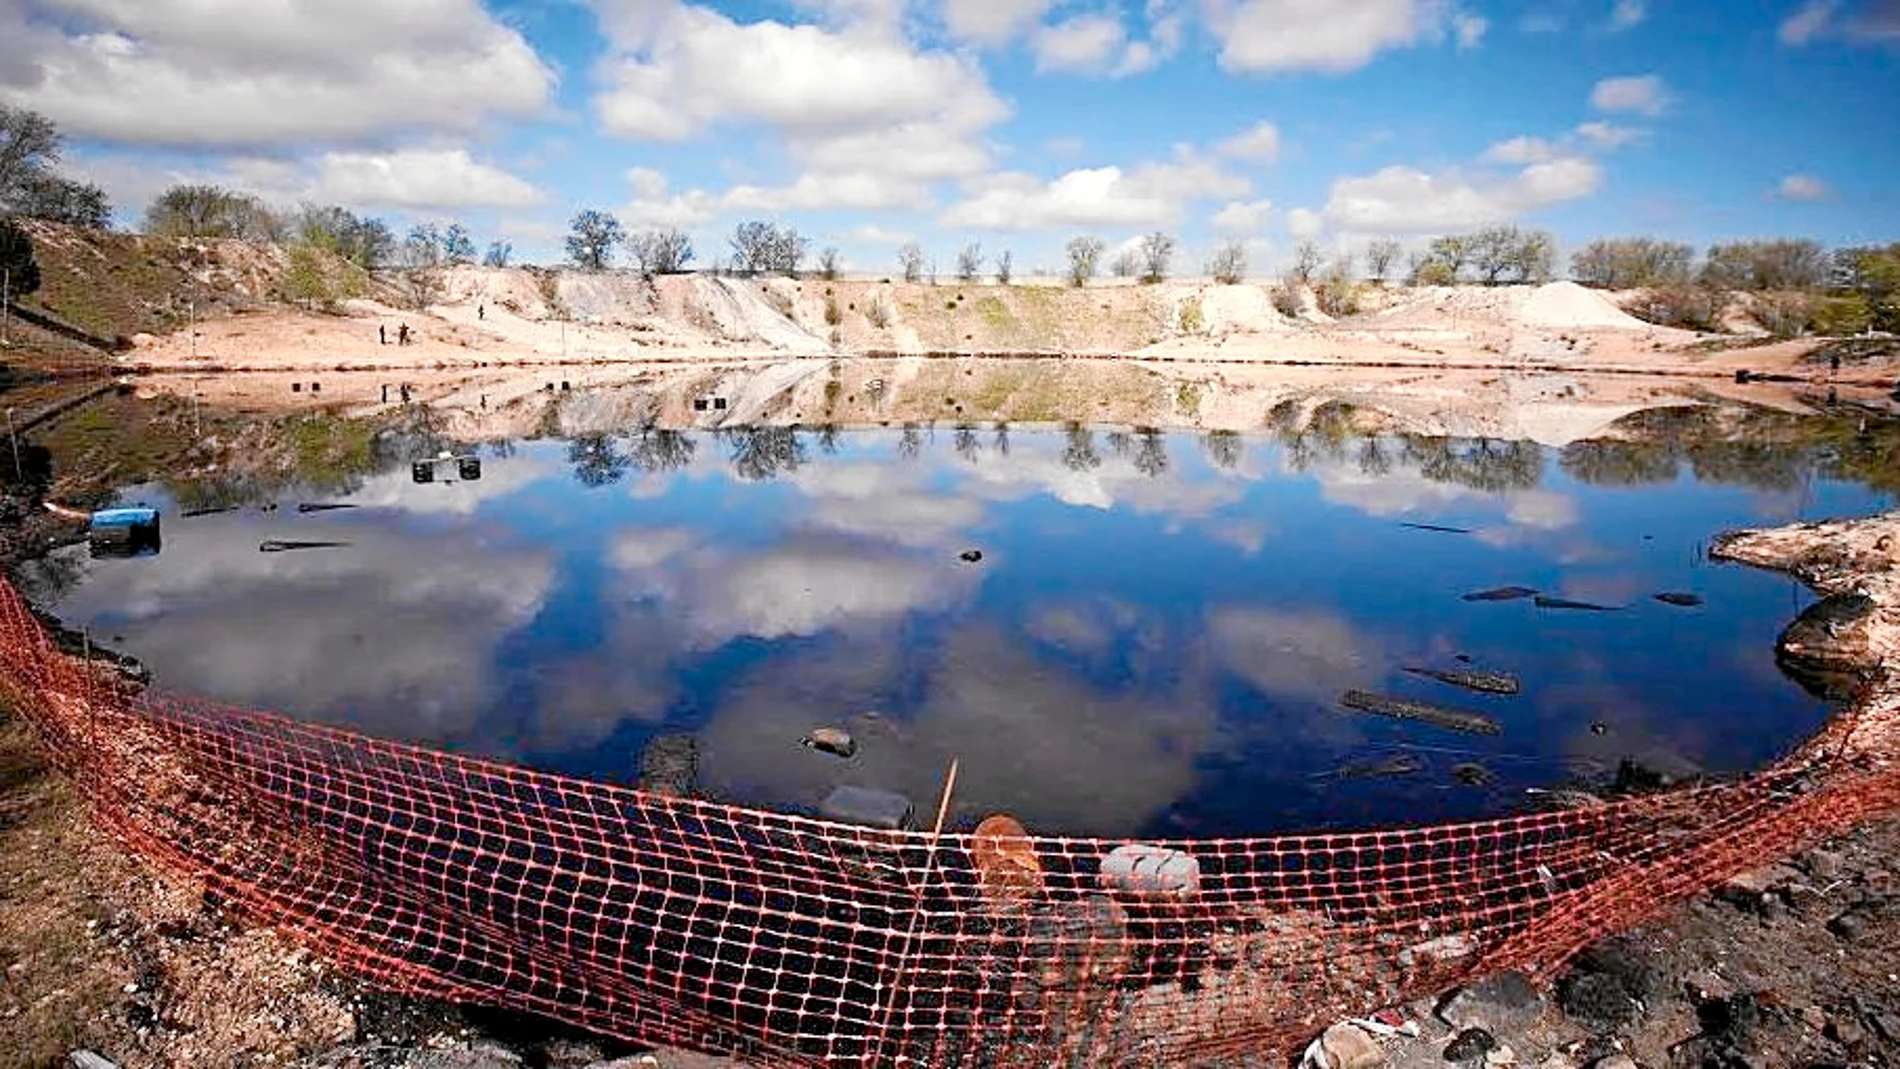 La superficie contaminada de la laguna de Arganda, en la imagen, supera los 50.000 metros cúbicos